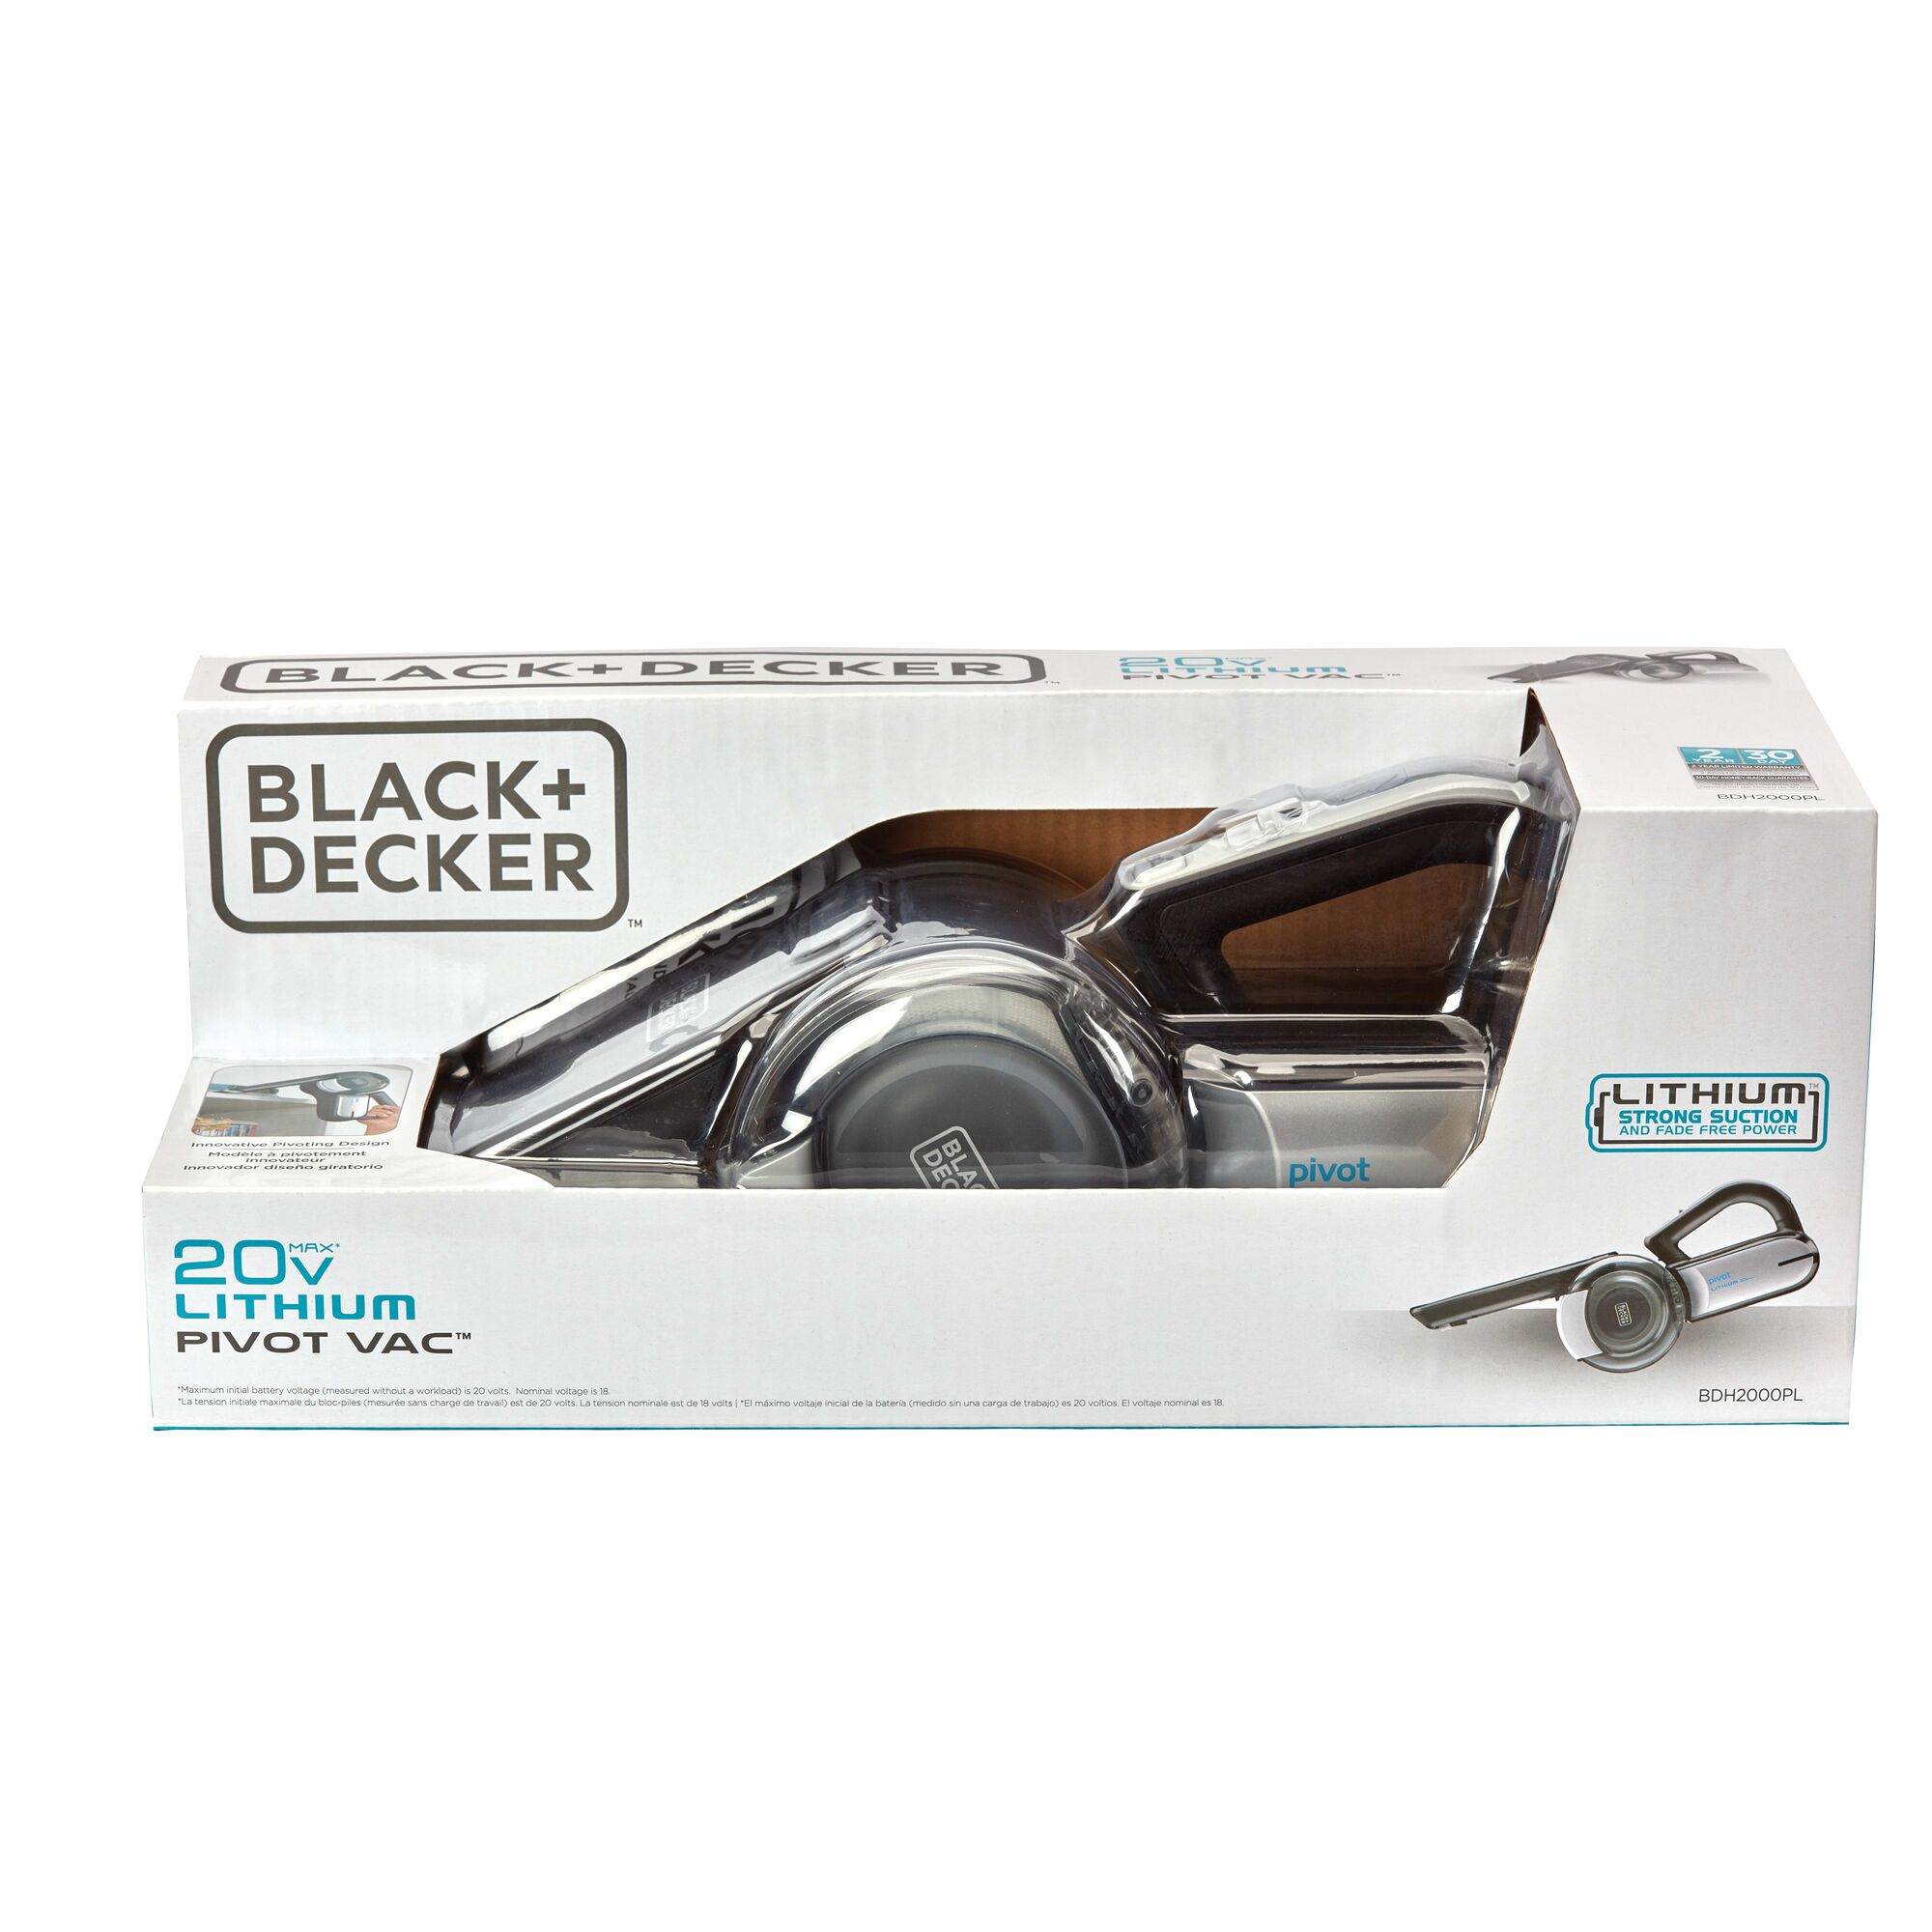 BLACK+DECKER 20V MAX* Lithium Pivot Vac, BDH2000PL 